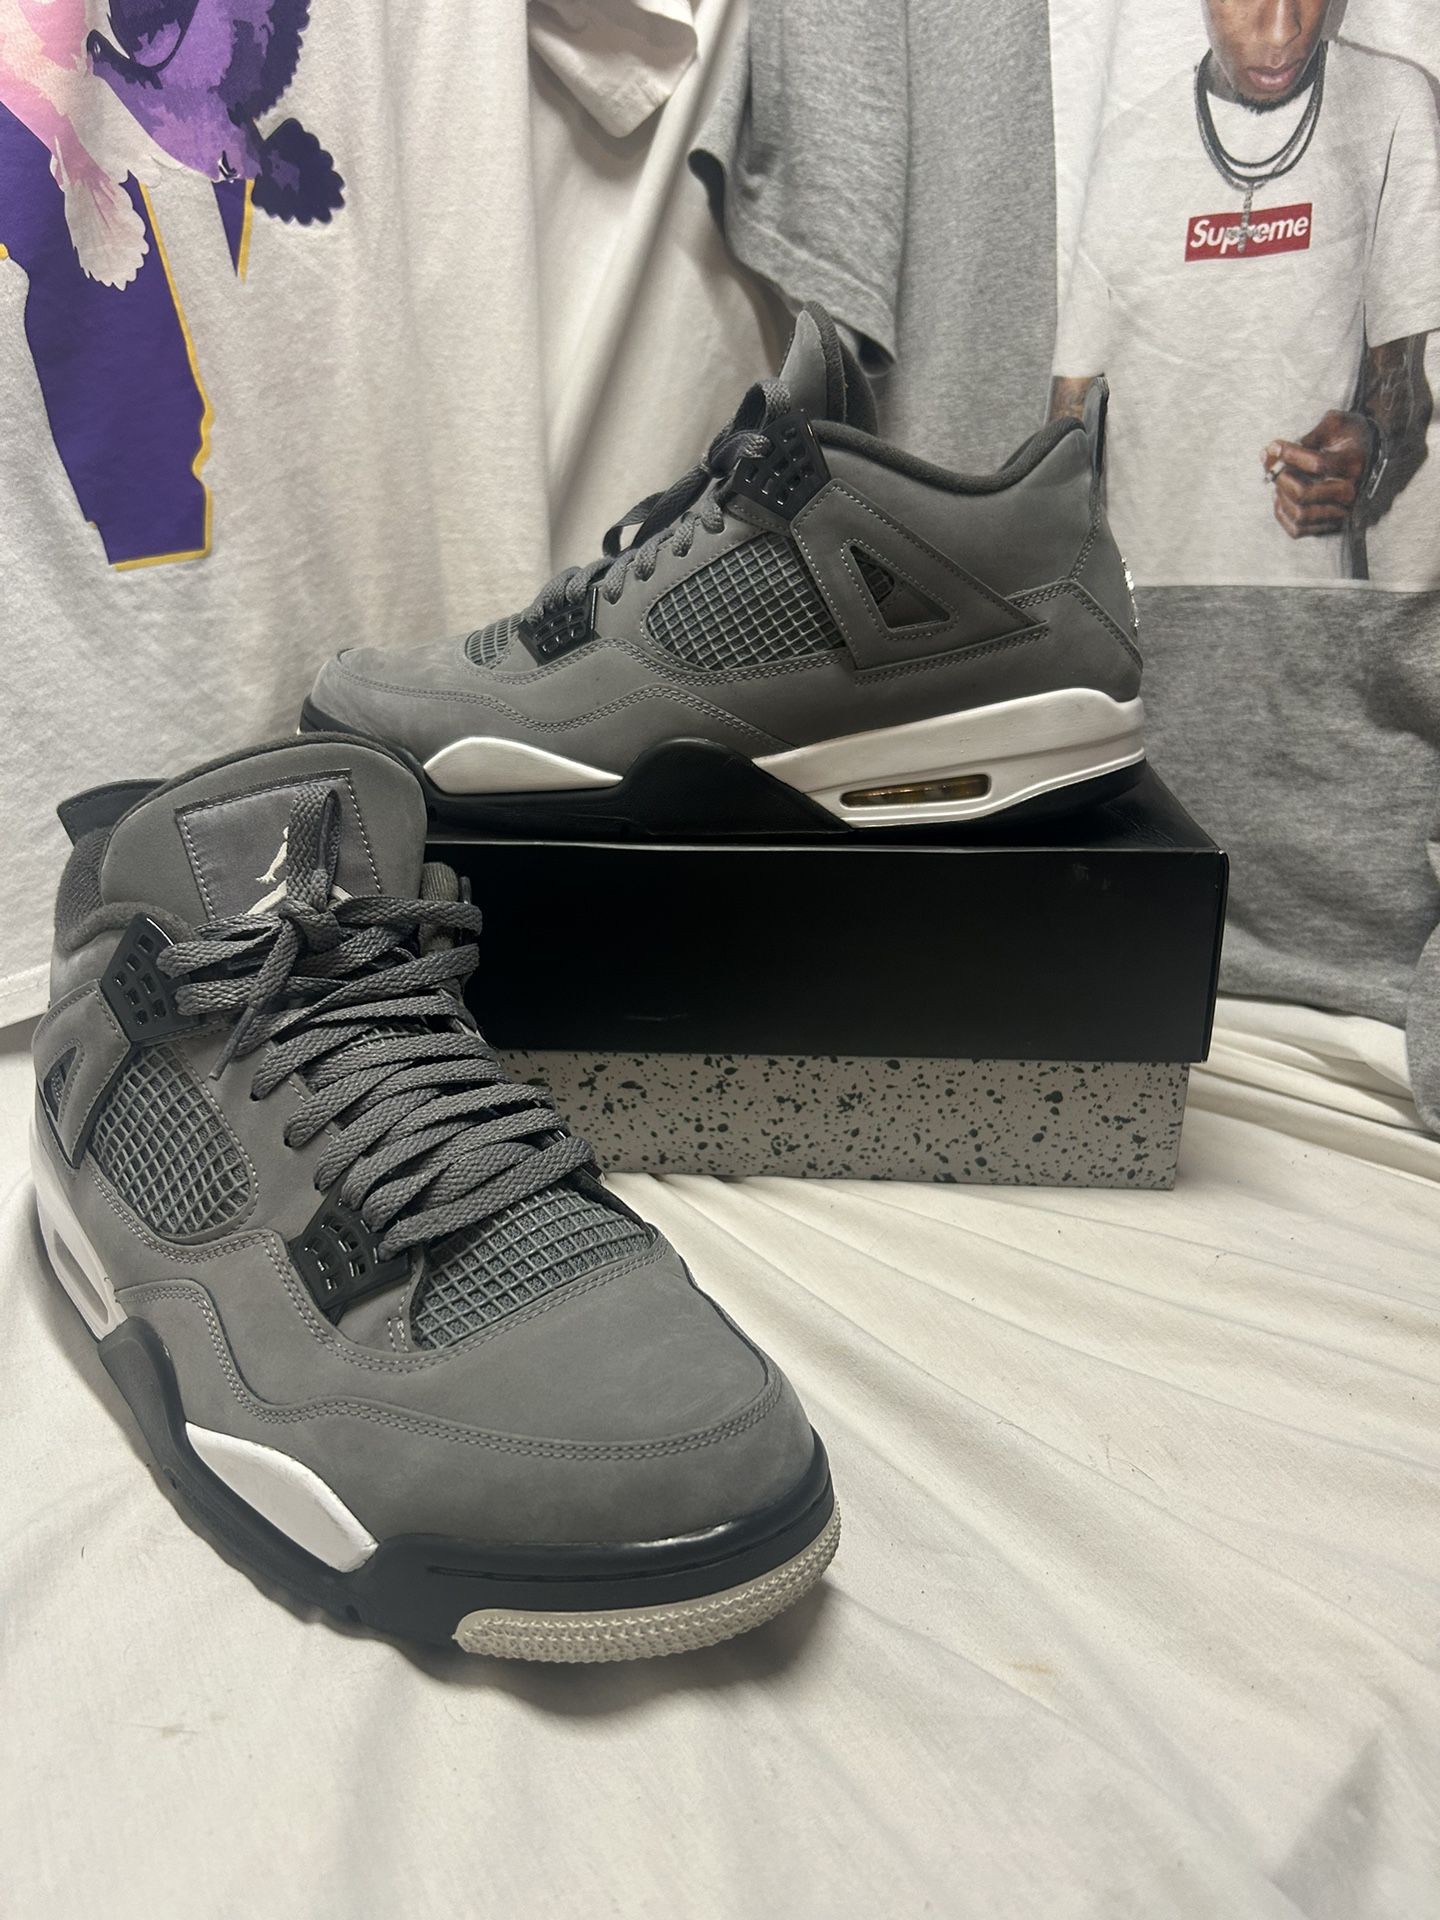 Cool grey Jordan 4 